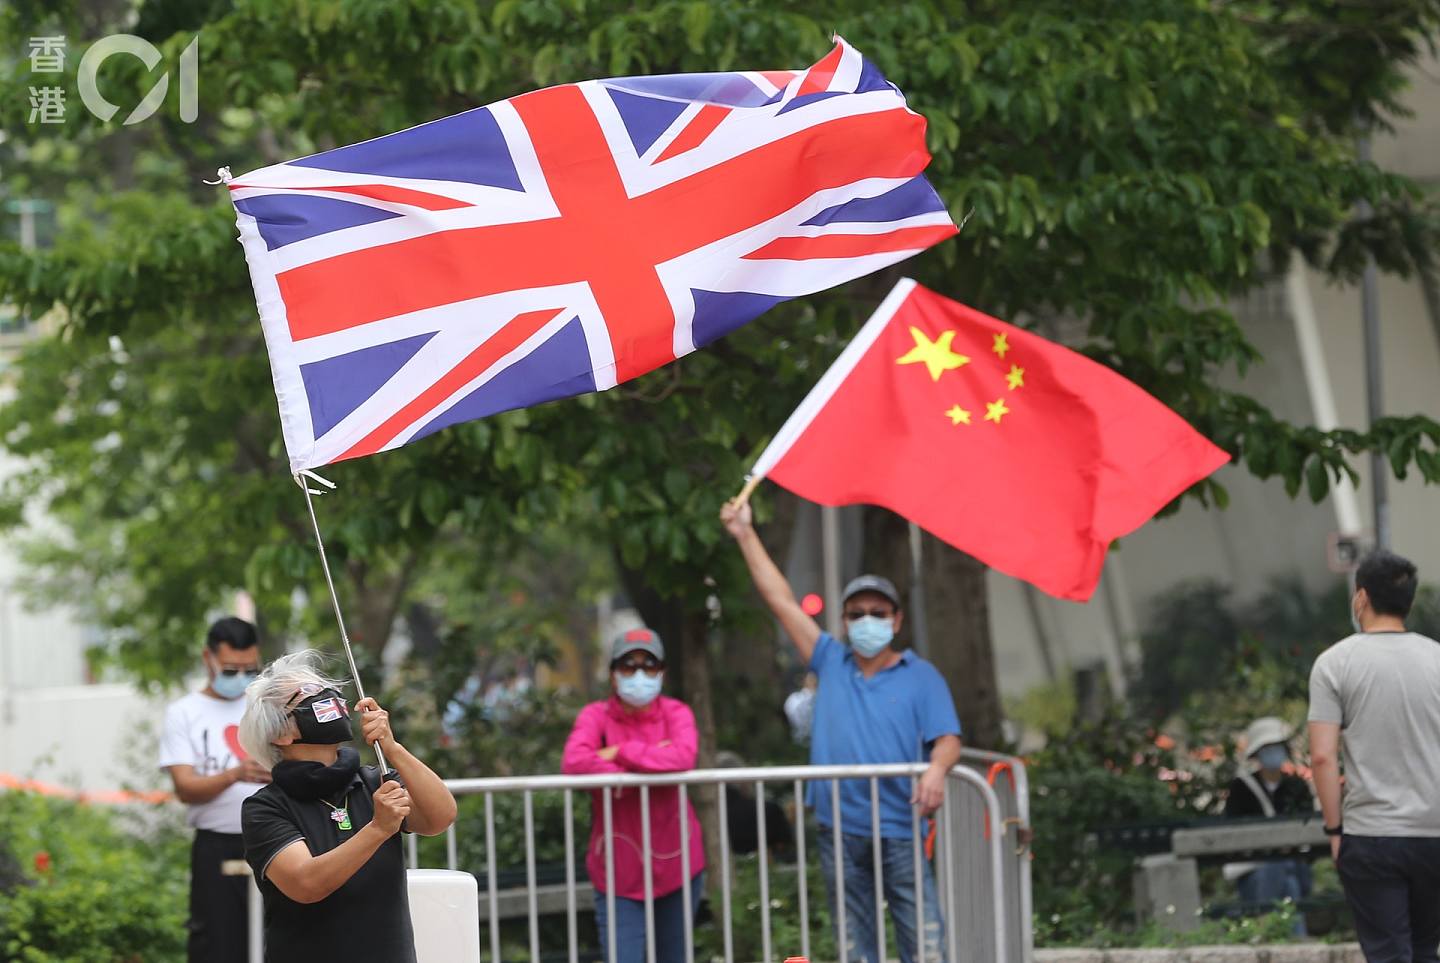 亦有不同政见人士在法院外挥动中国及英国国旗。 (蔡正邦摄)